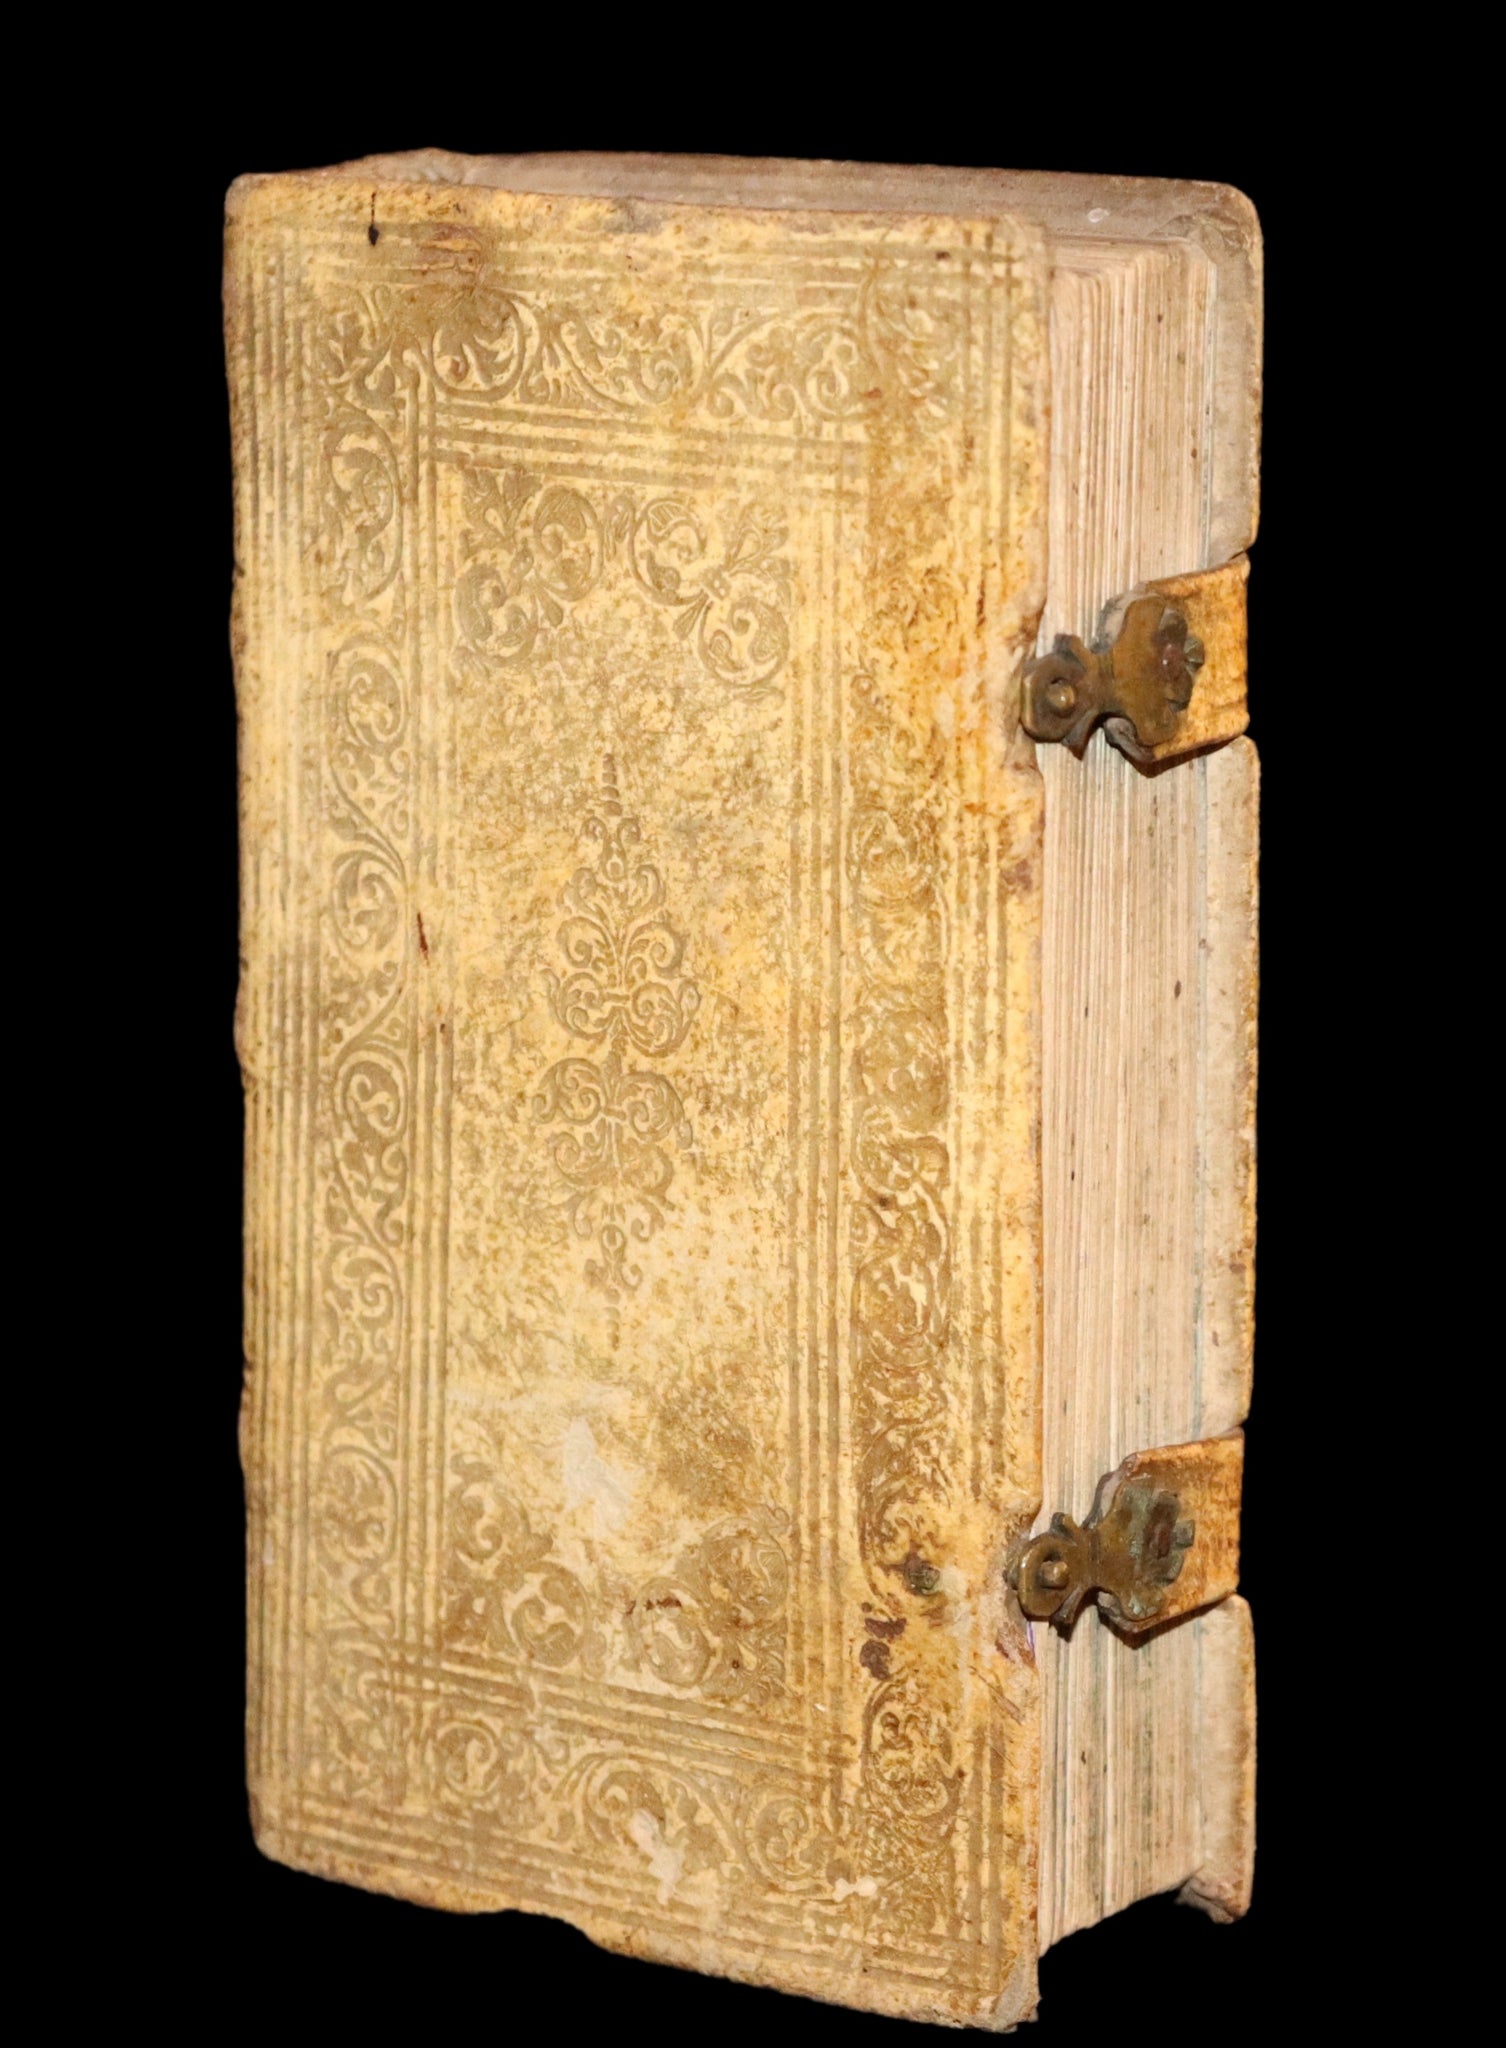 1685 Rare vellum Latin Book with claps - EXORCISM & Benediction Manual -  EXORCISMUS contra MALEFICIA, Benedictiones, Conjurationes, Absolutiones, ...